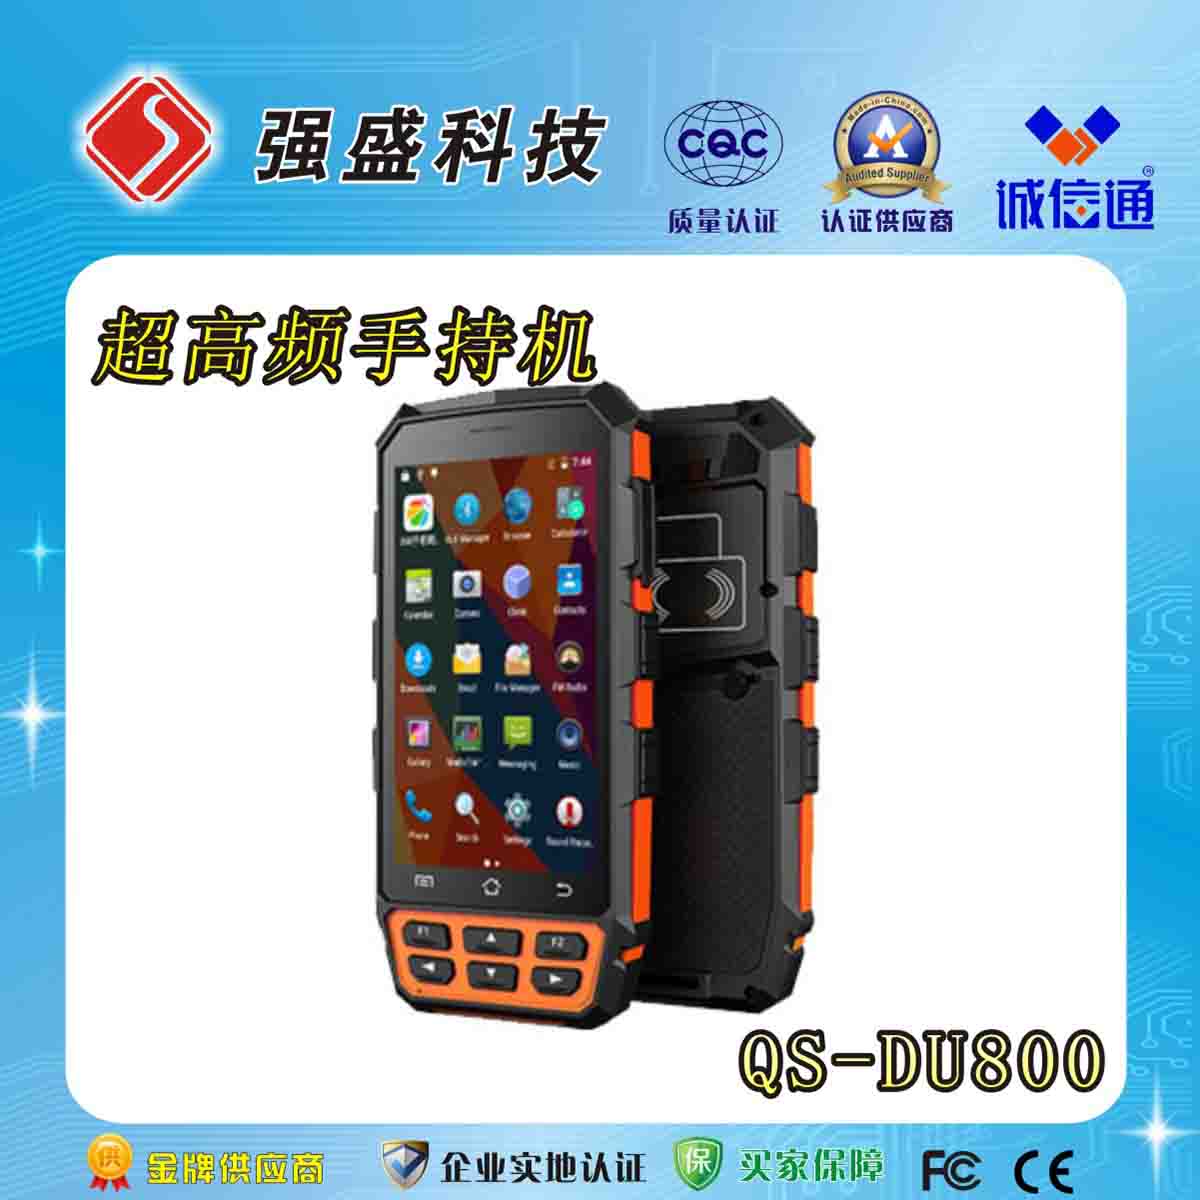 高频手持机 QS-DU800批发